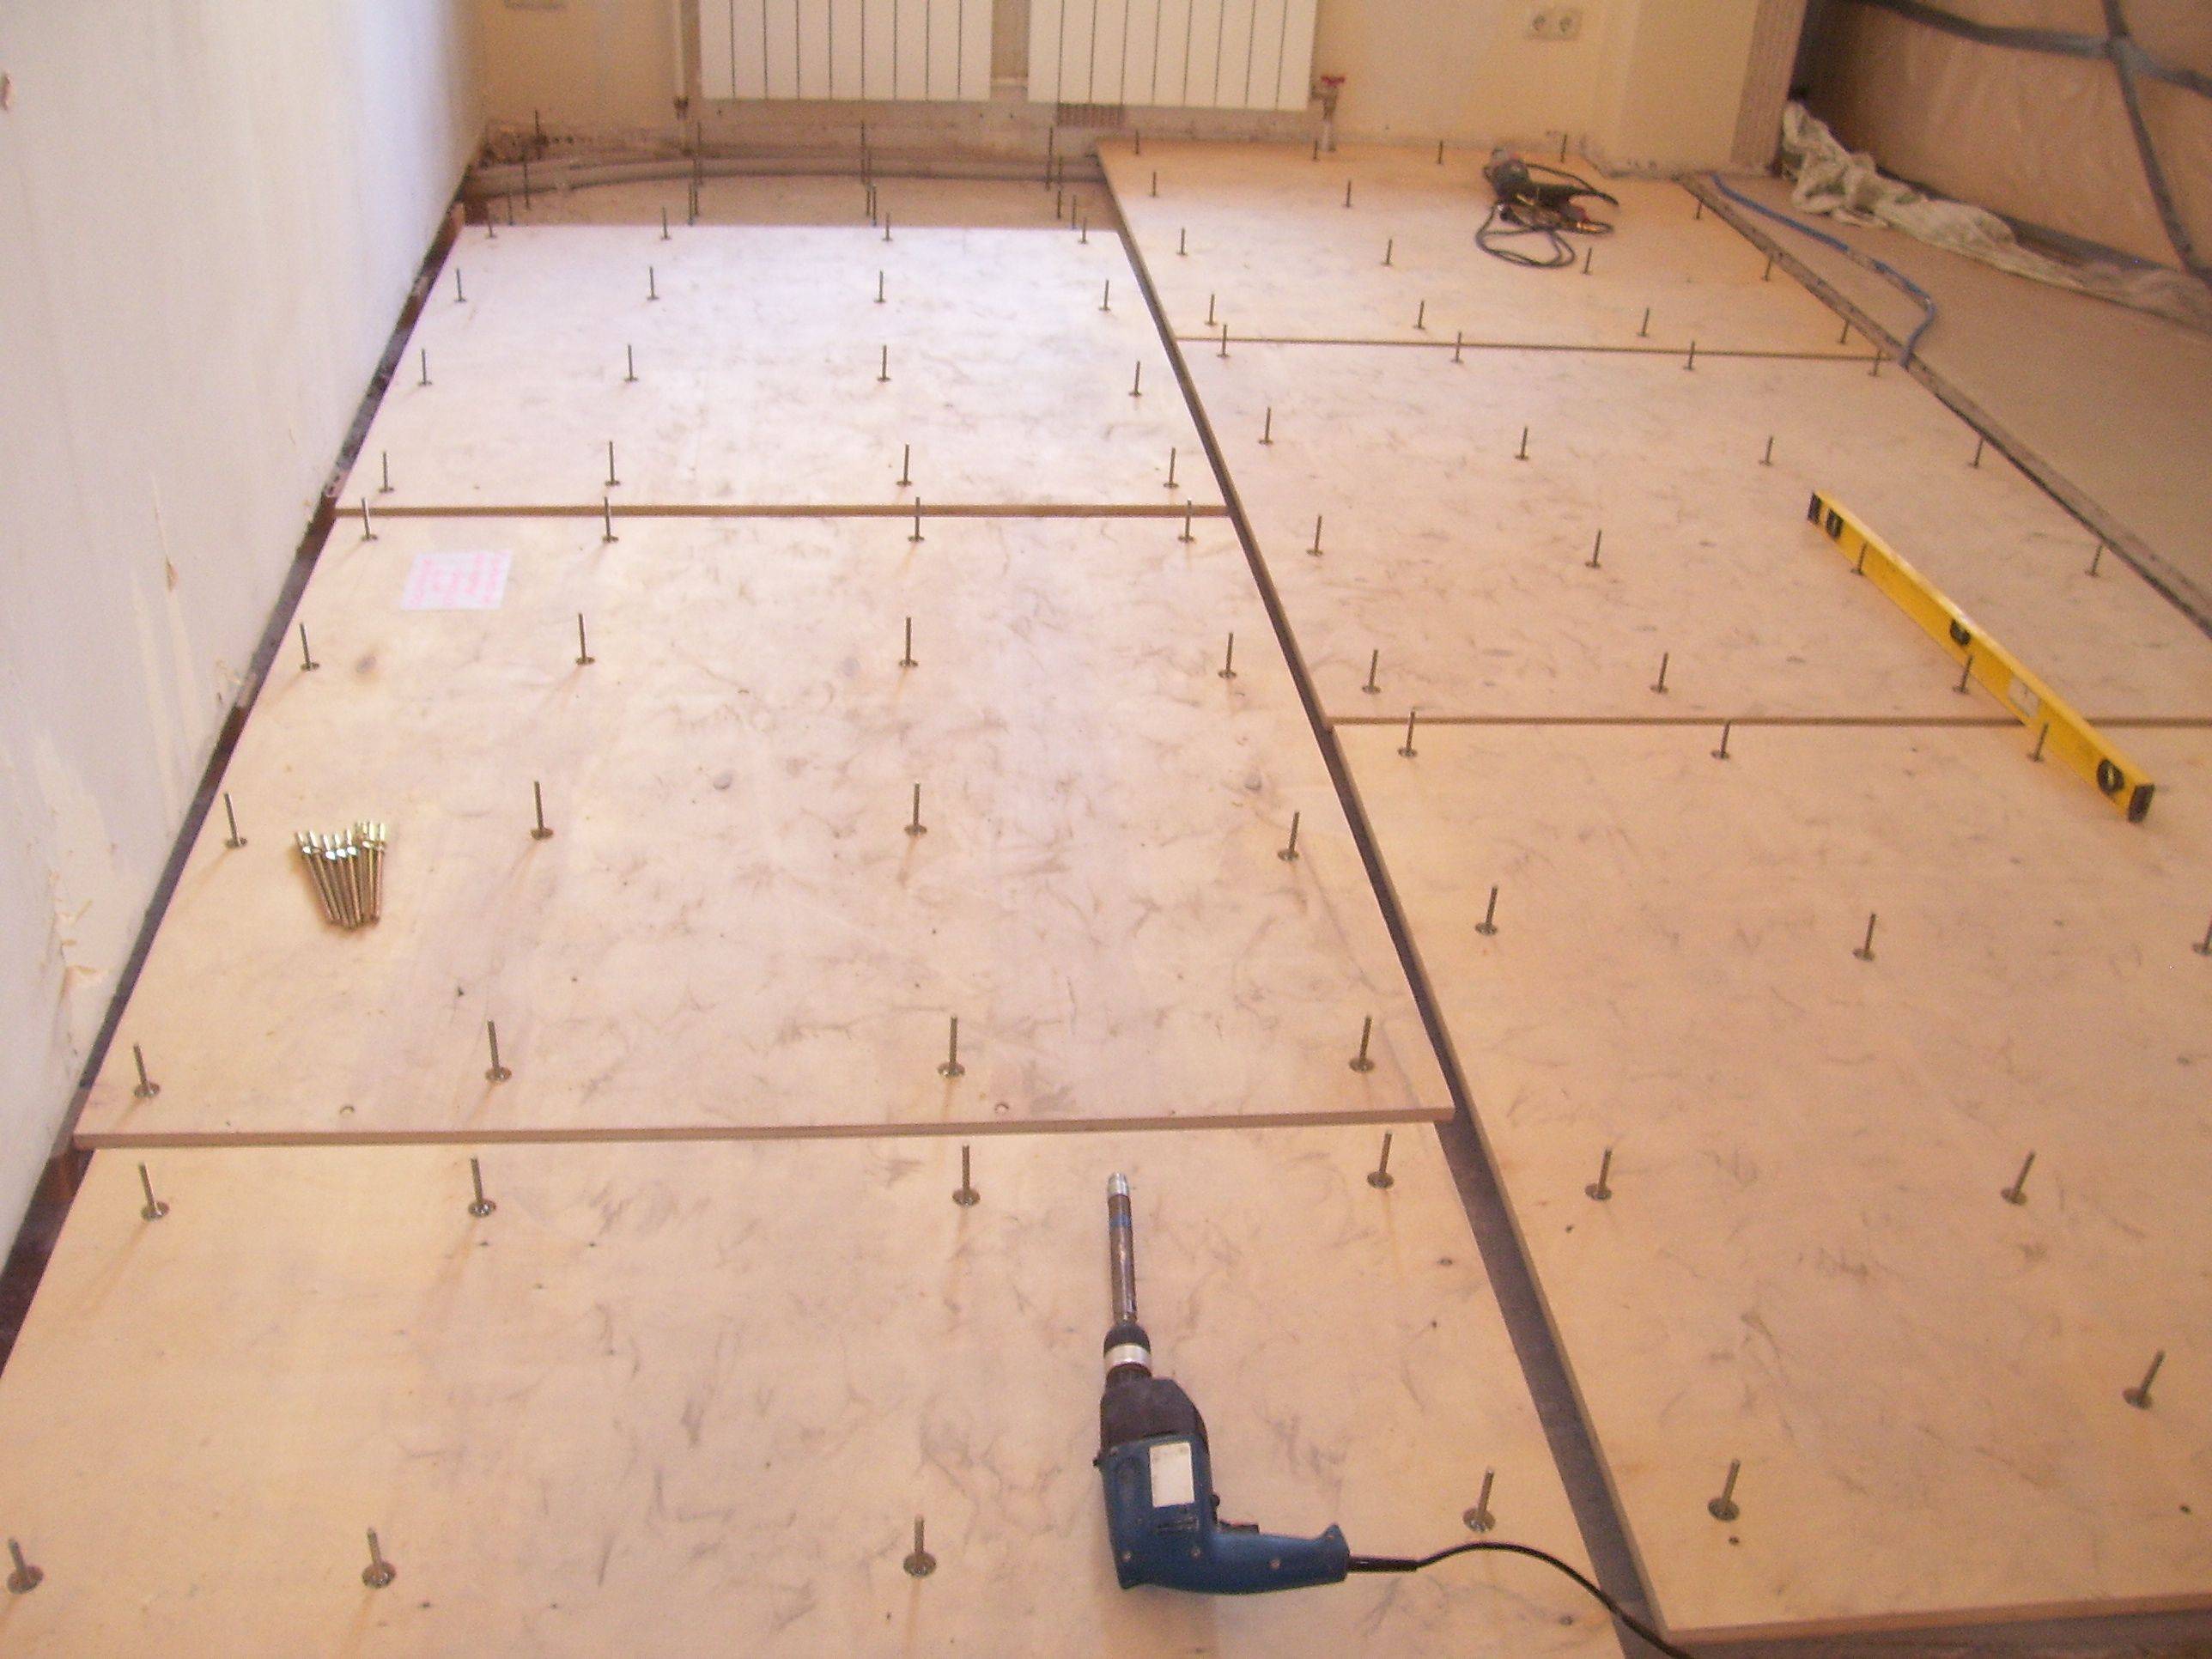 Укладка фанеры на бетонный пол: этапы монтажа